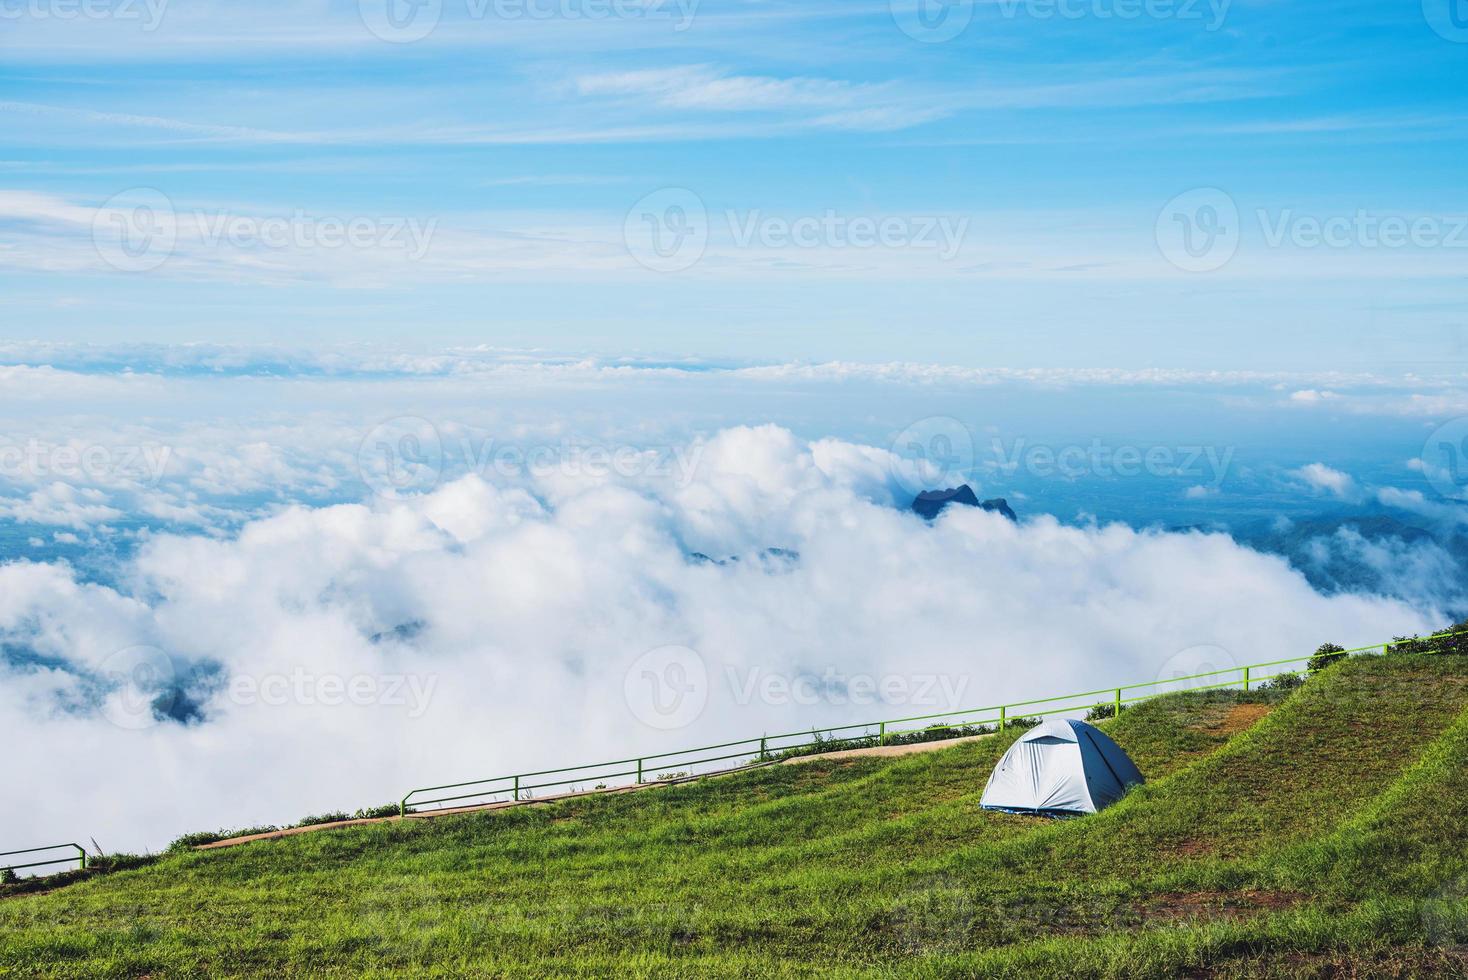 paesaggio in montagna rinfrescante nella stagione delle piogge. belle nuvole e tenda da campeggio foto